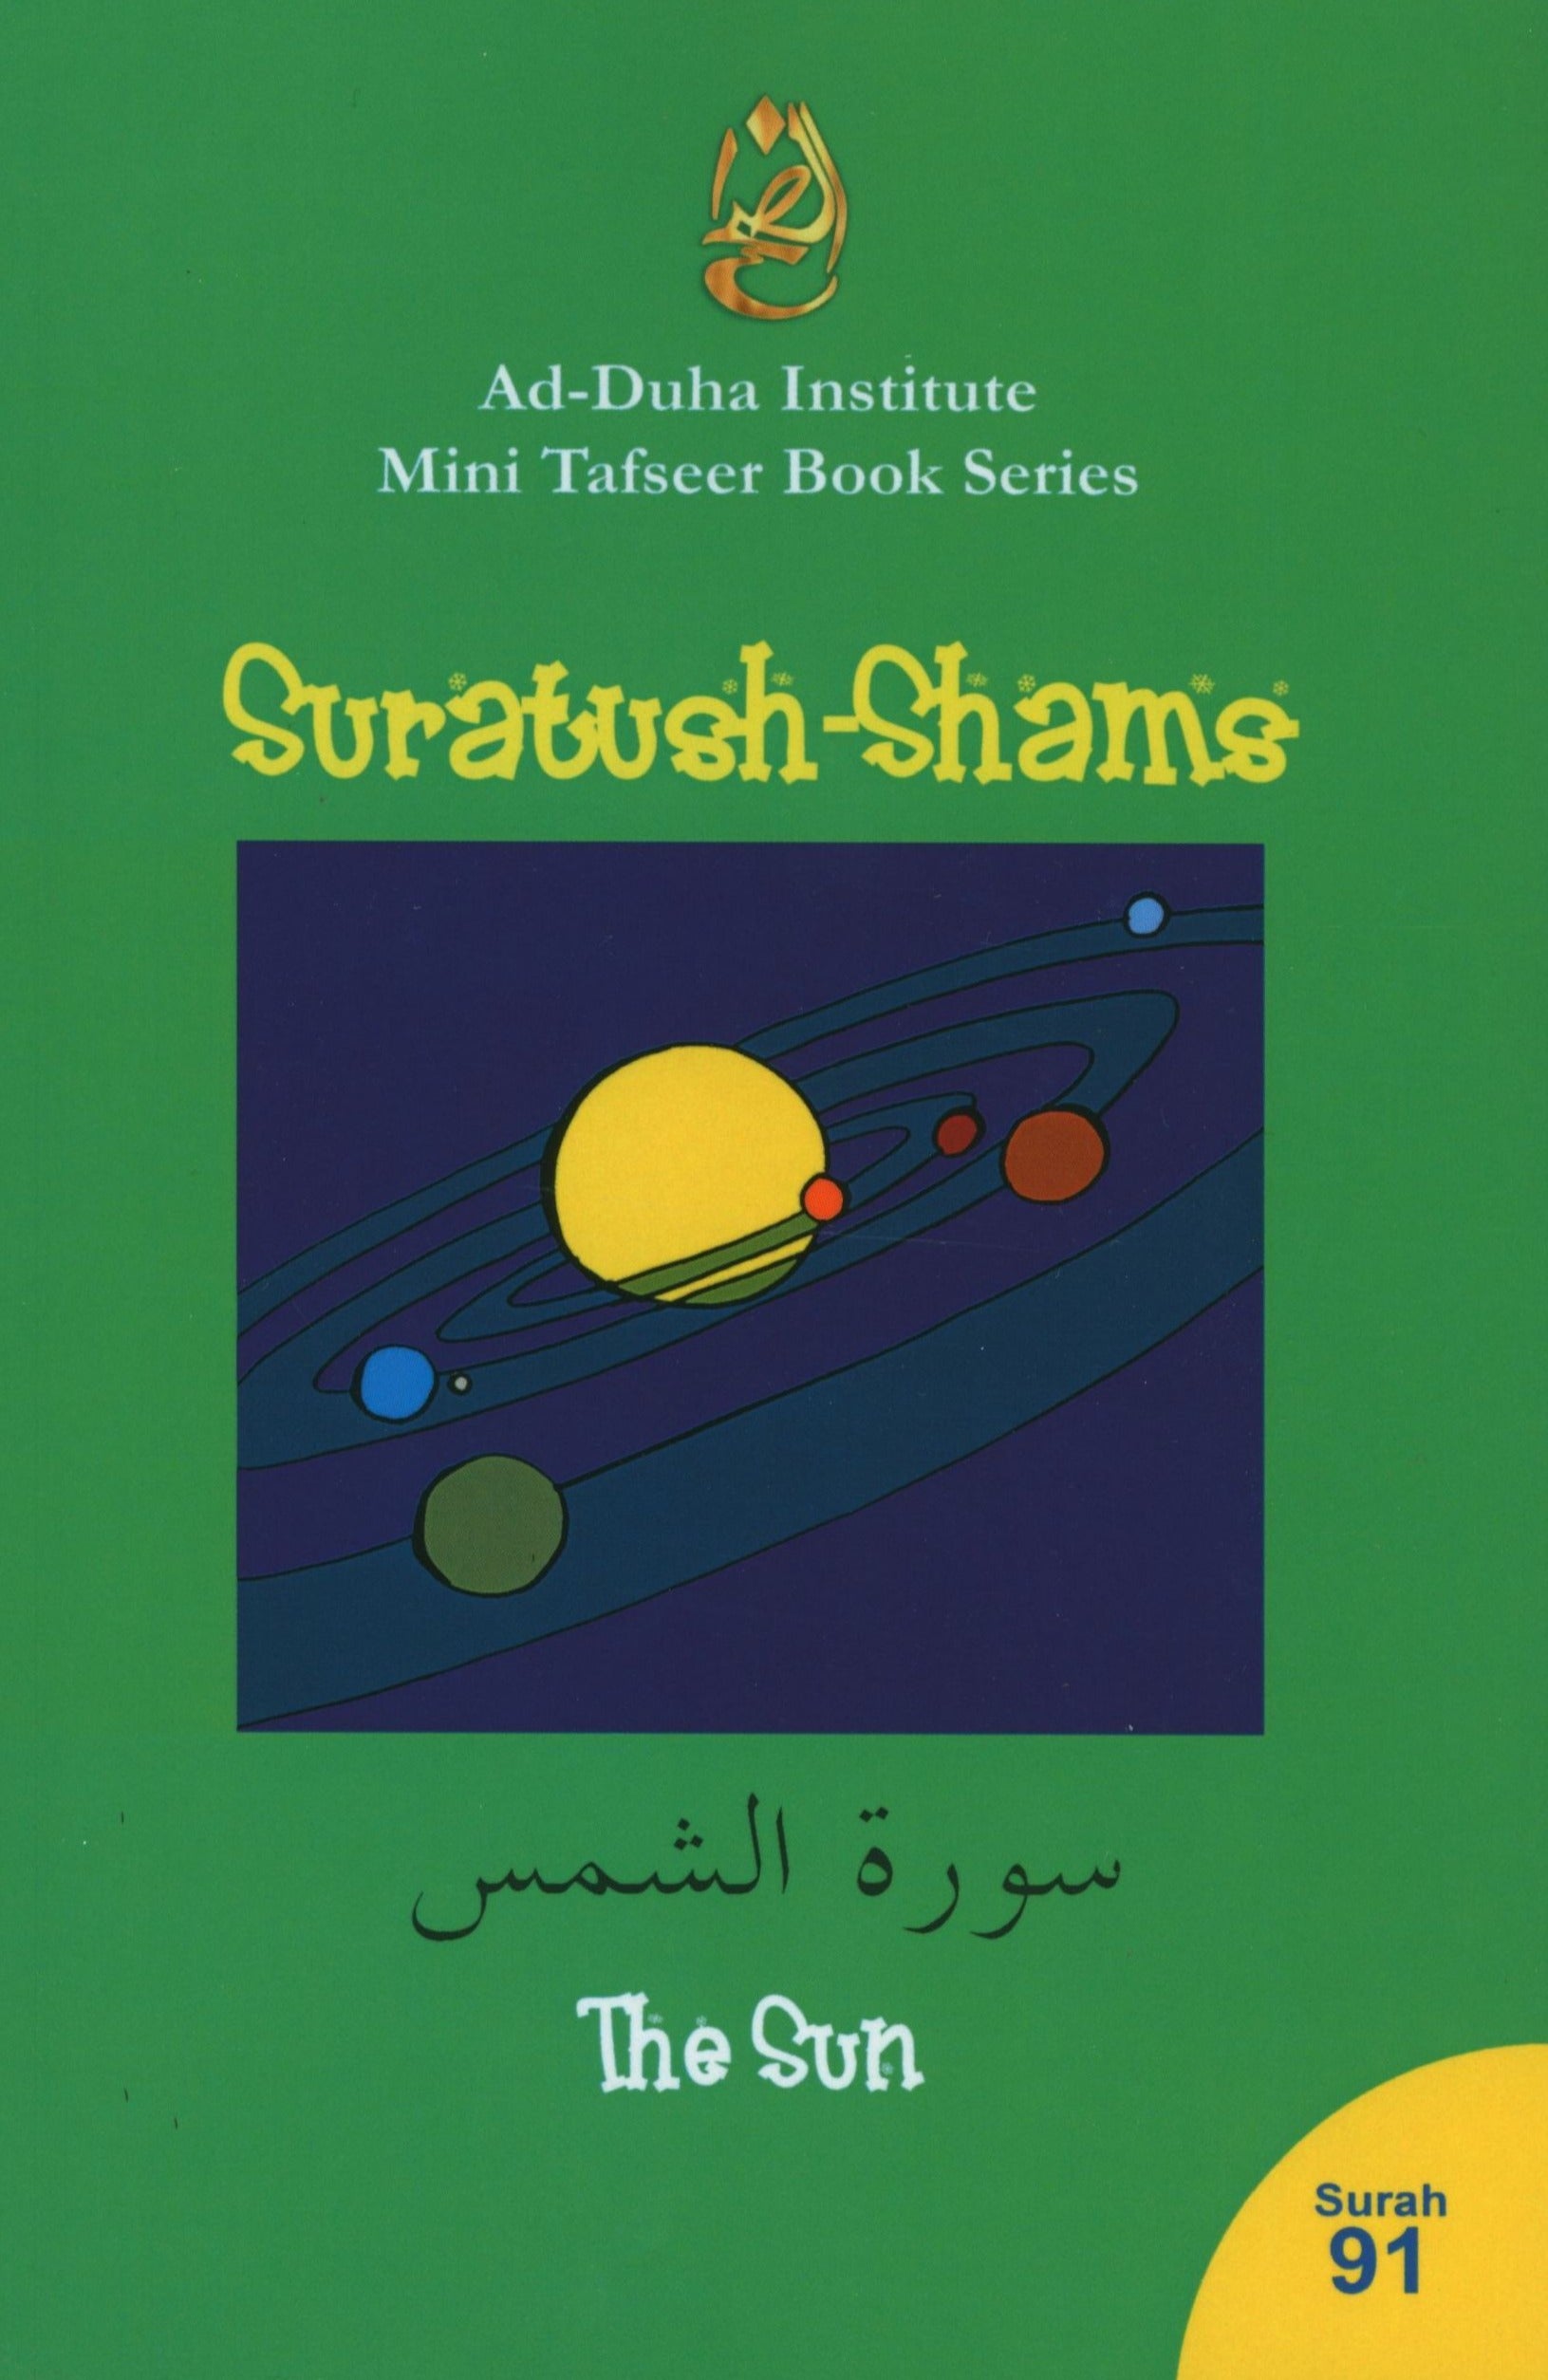 Mini Tafseer Book Suratush Shams (Surah 91)